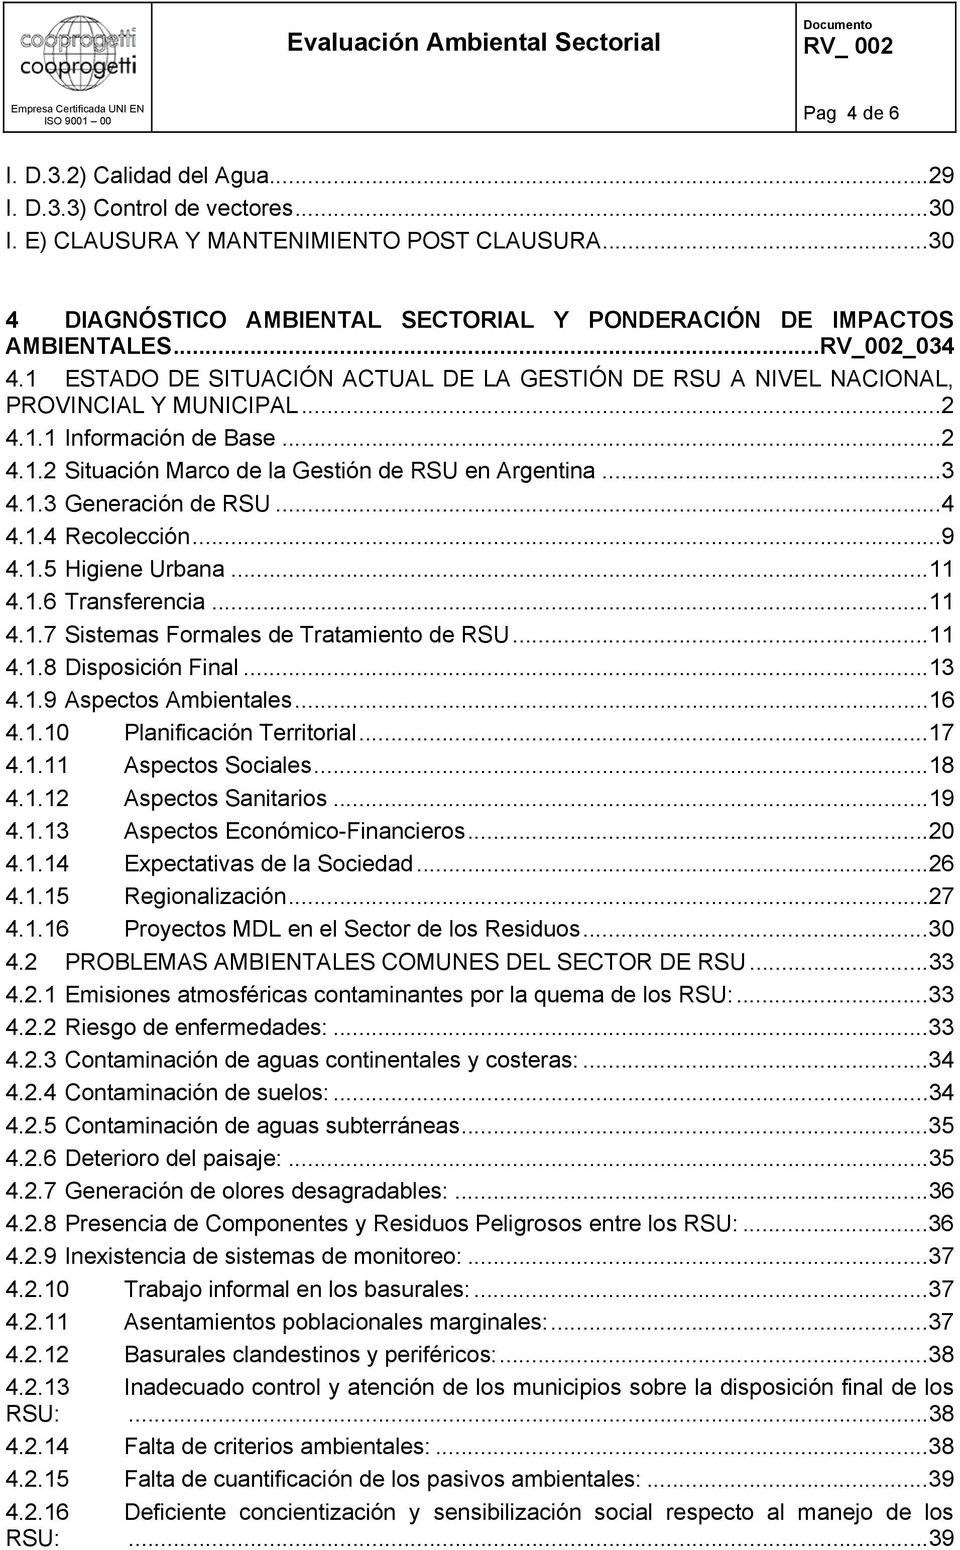 ..2 4.1.2 Situación Marco de la Gestión de RSU en Argentina...3 4.1.3 Generación de RSU...4 4.1.4 Recolección...9 4.1.5 Higiene Urbana...11 4.1.6 Transferencia...11 4.1.7 Sistemas Formales de Tratamiento de RSU.